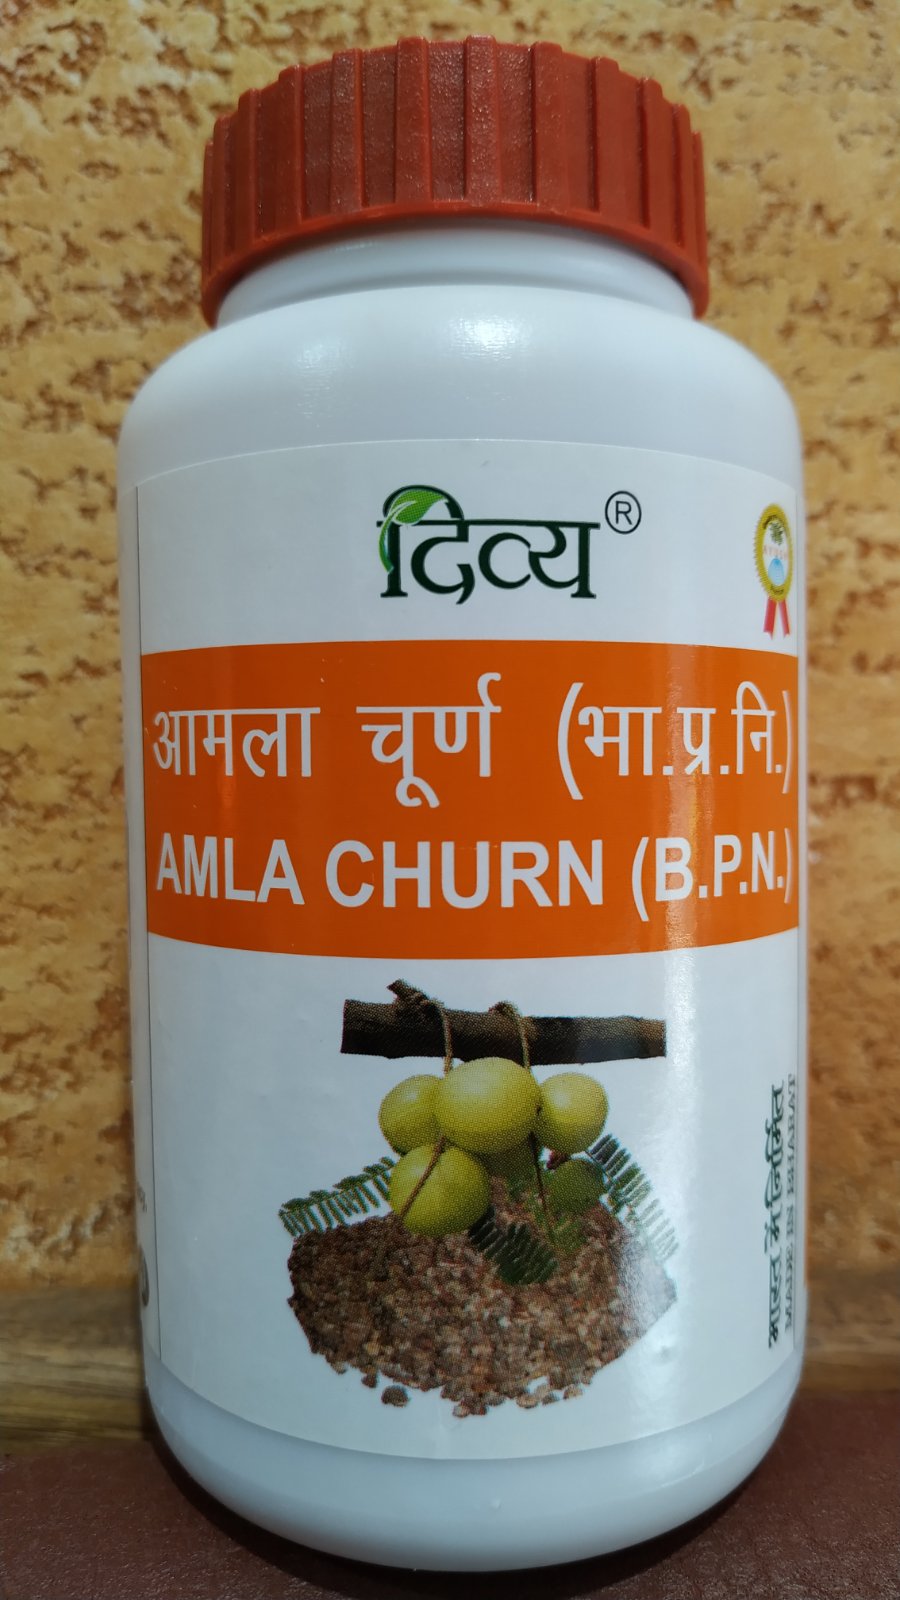 Amla churna divya Амла Чурна тоник для кровяной системы, печени, сердца, улучшает зрение, тонус 100 гр Индия